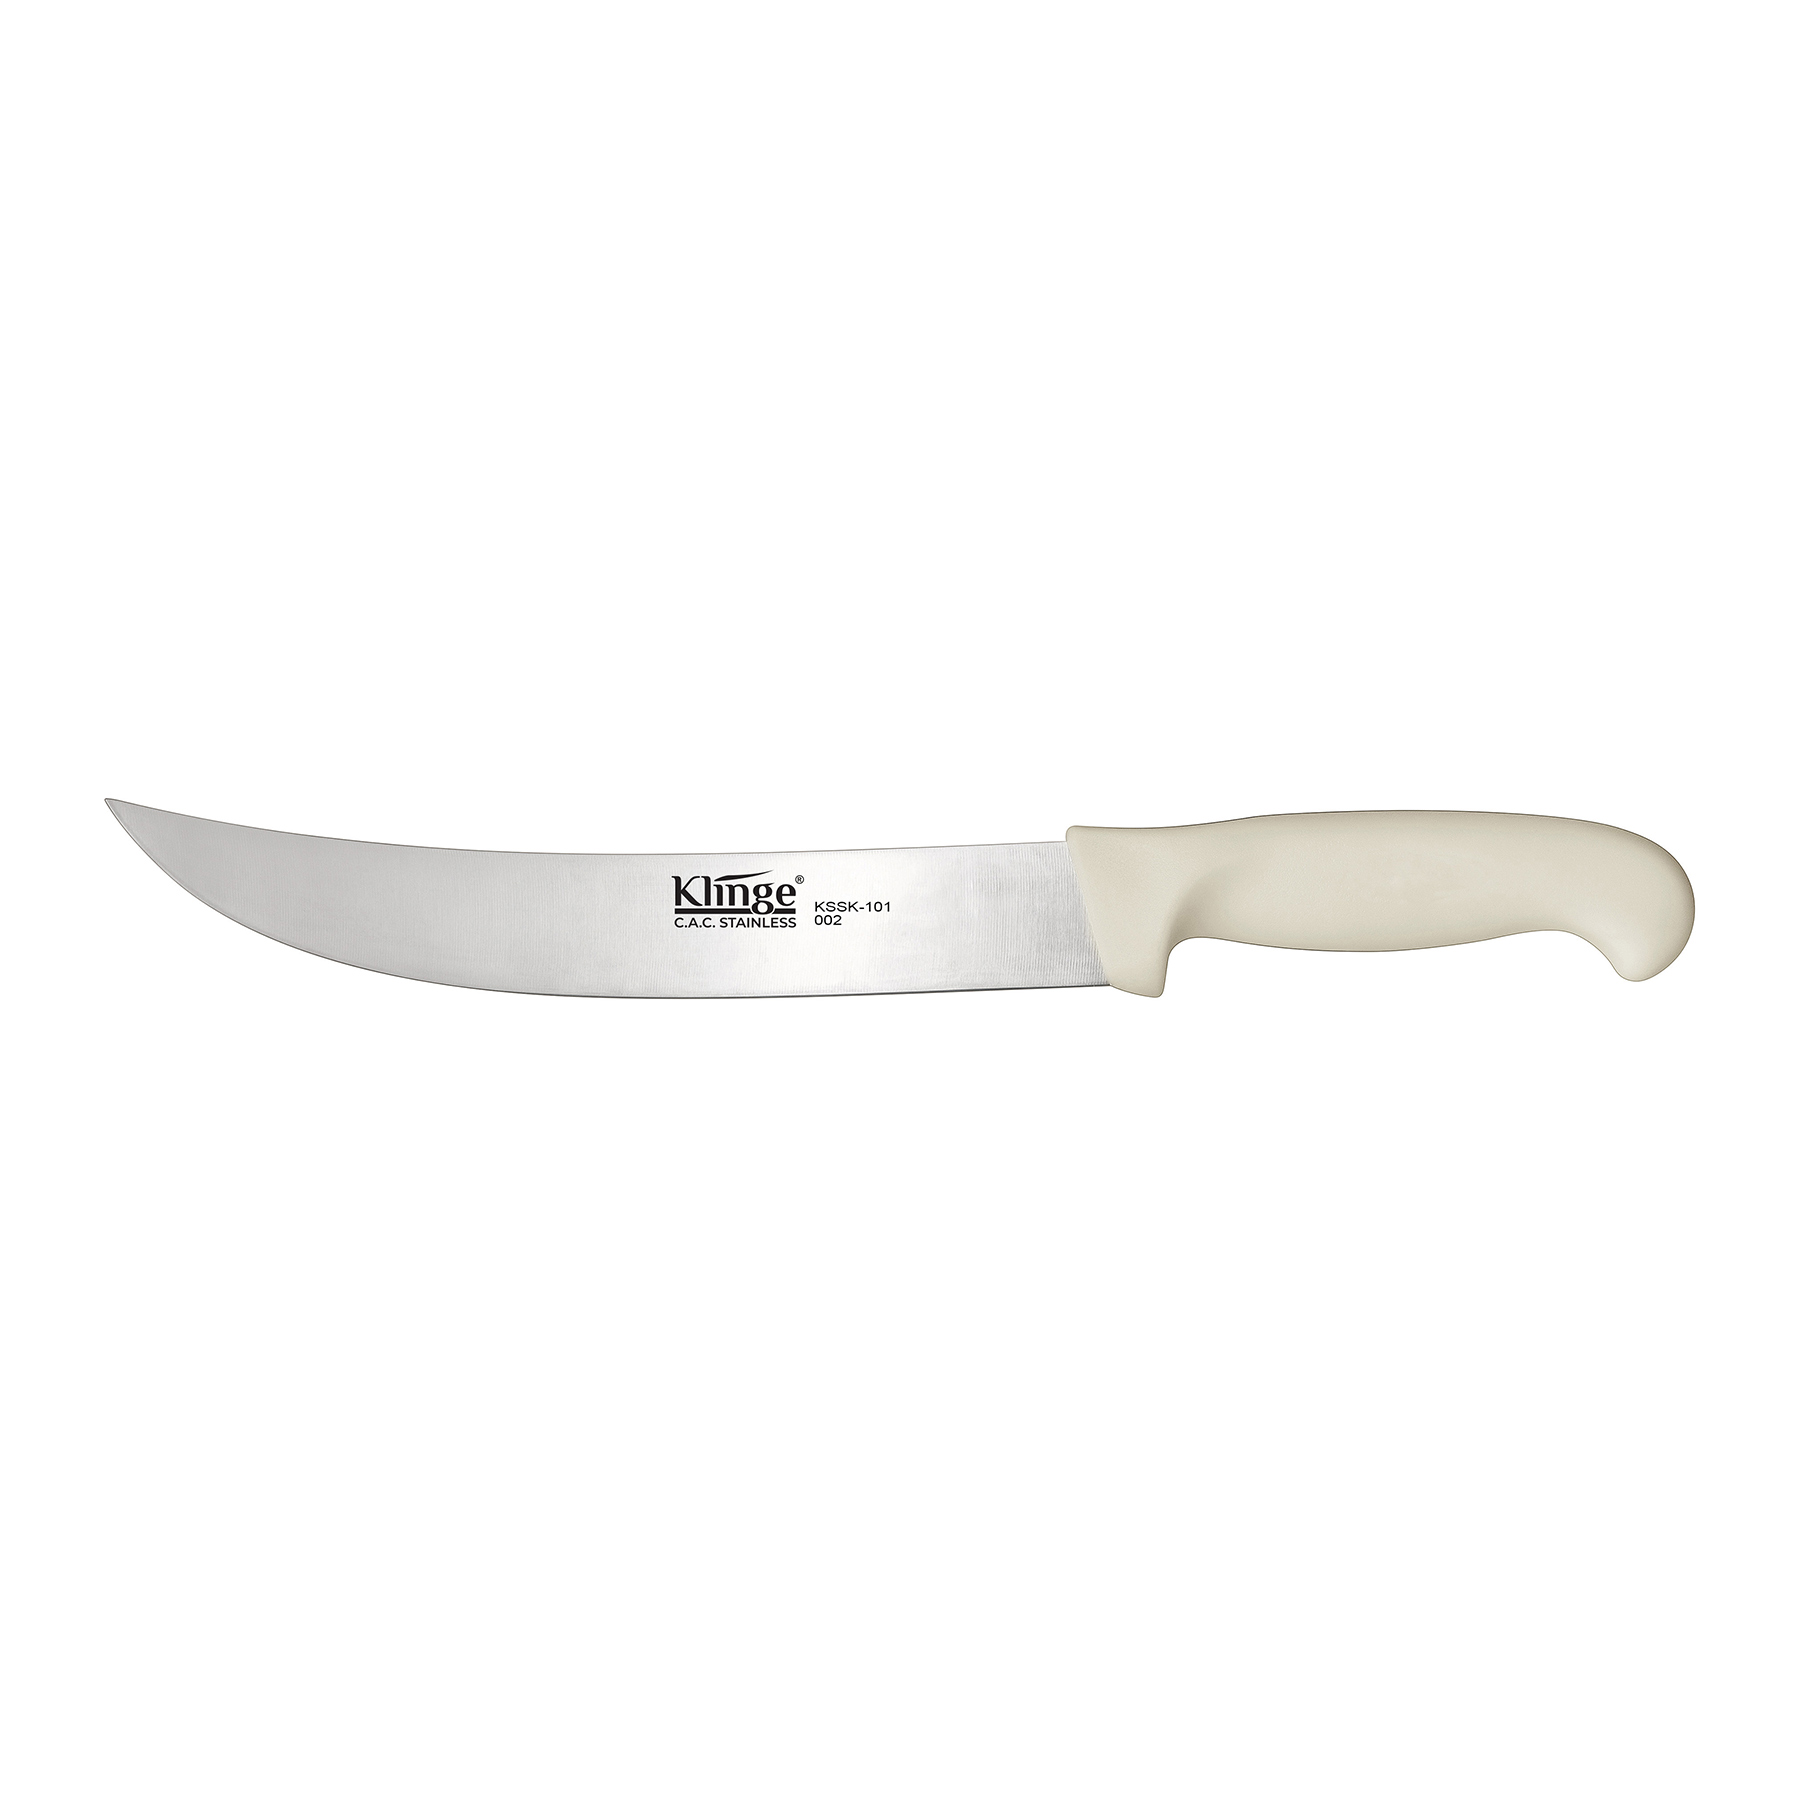 CAC China KSSK-101 Klinge Stamped Cimeter Steak Knife 10"